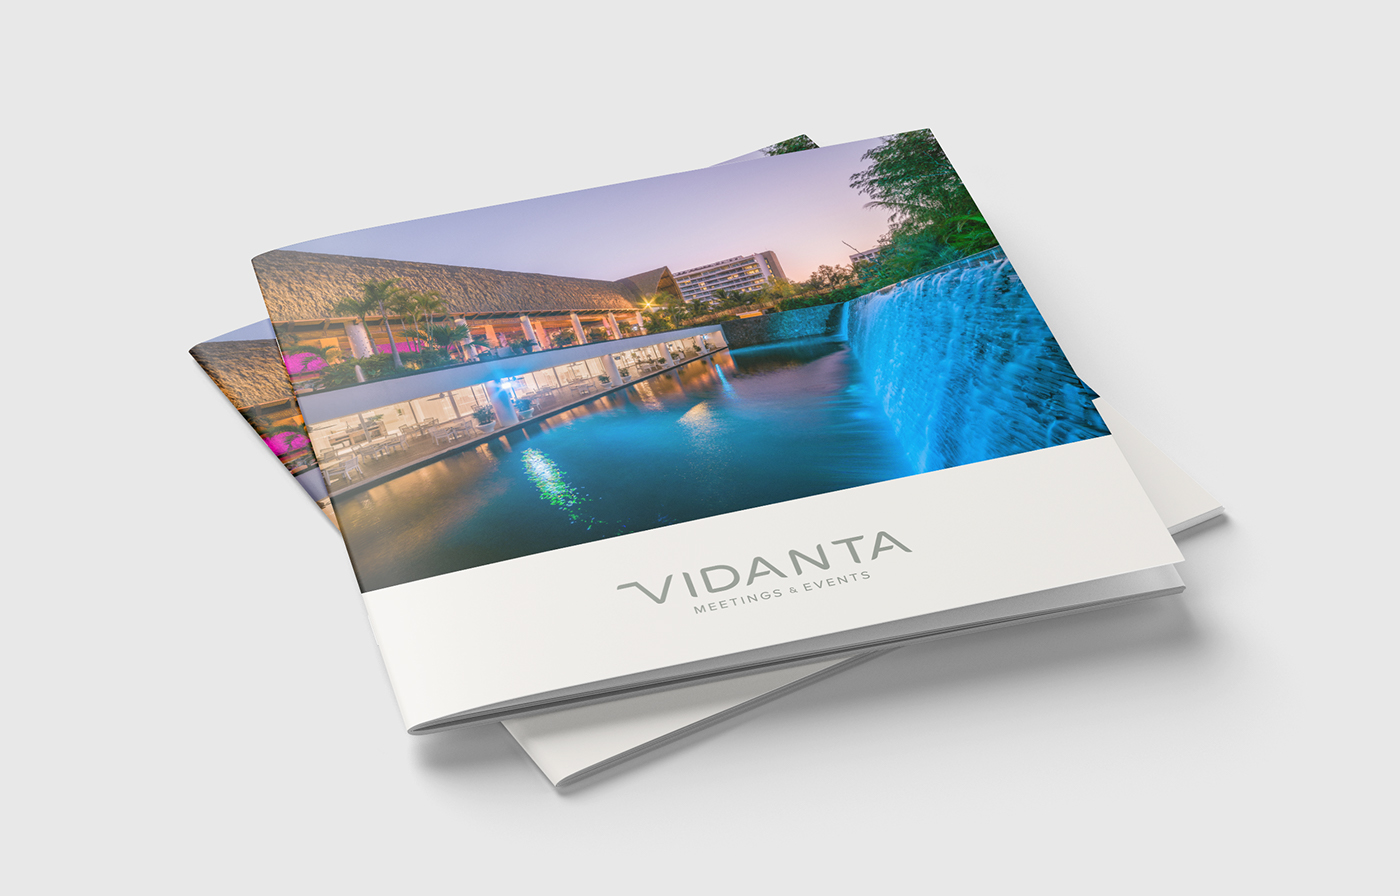 folleto brochure Vidanta MEETINGS & EVENTS Nuevo Vallarta editorial puerto vallarta Events meetings